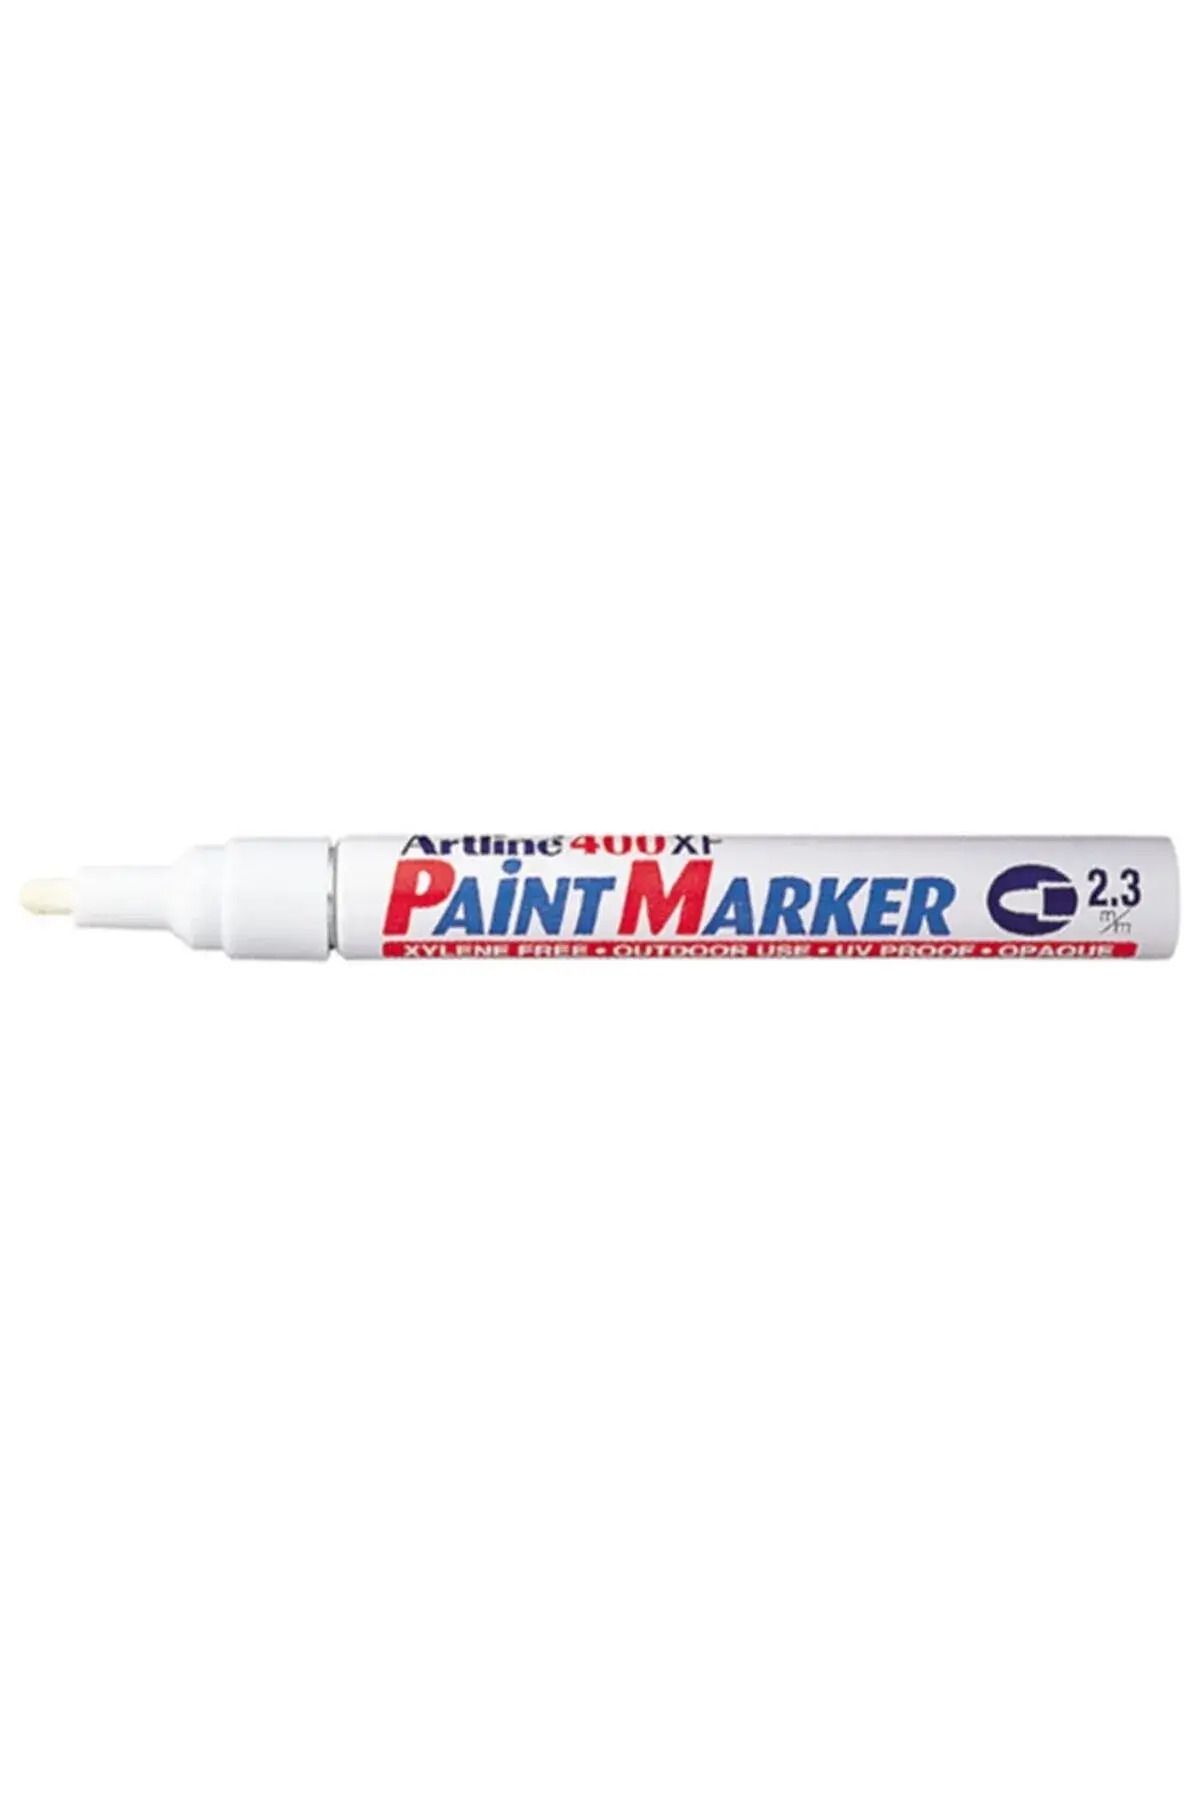 artline 400xf 2.3mm Paint Marker Çok Amaçlı Boyama Markörü Beyaz